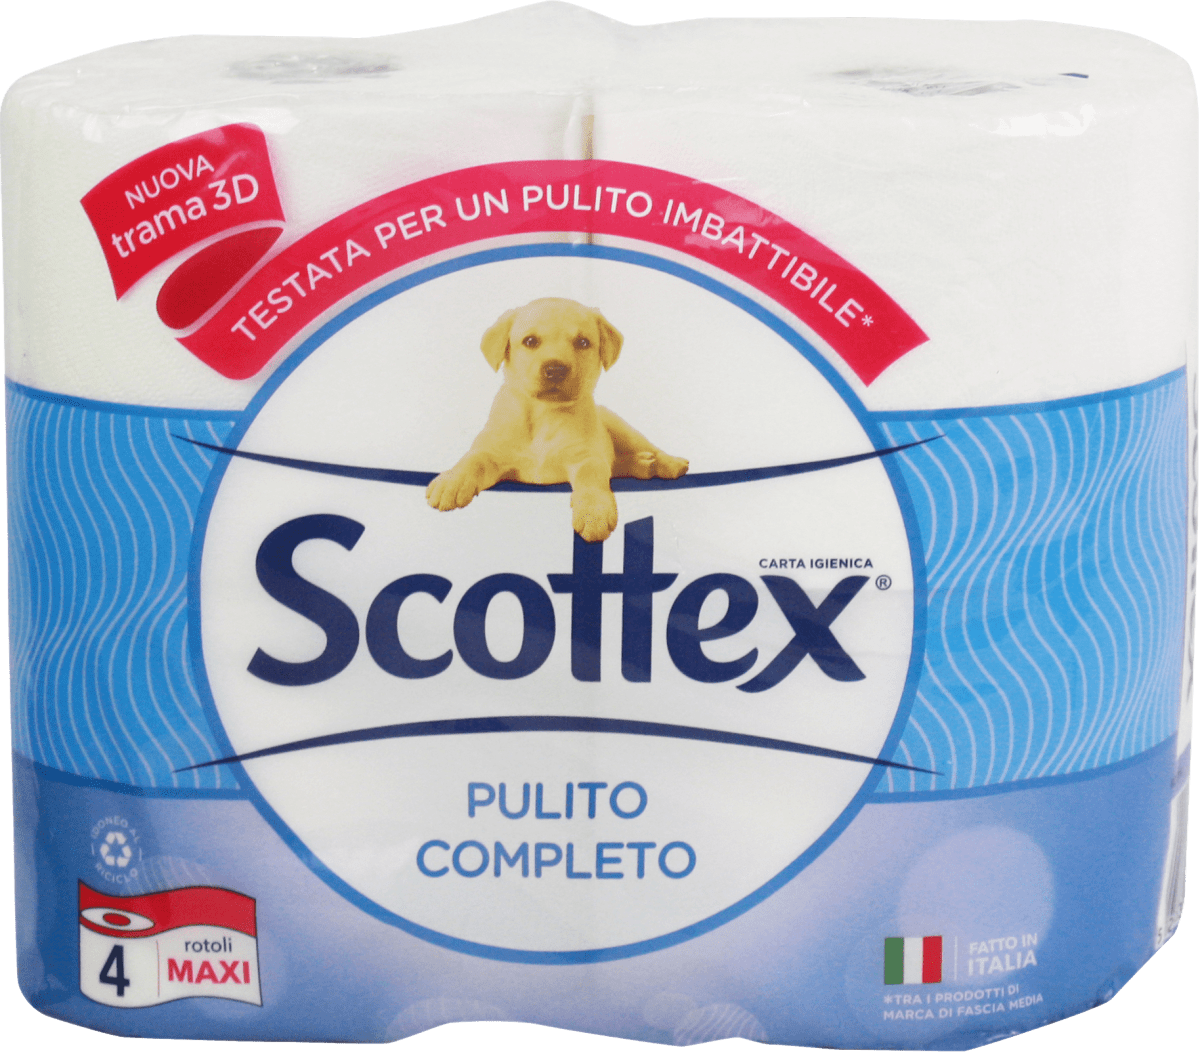 Scottex Pulito Originale Carta Igienica, Maxi XXL 4 Rotoli